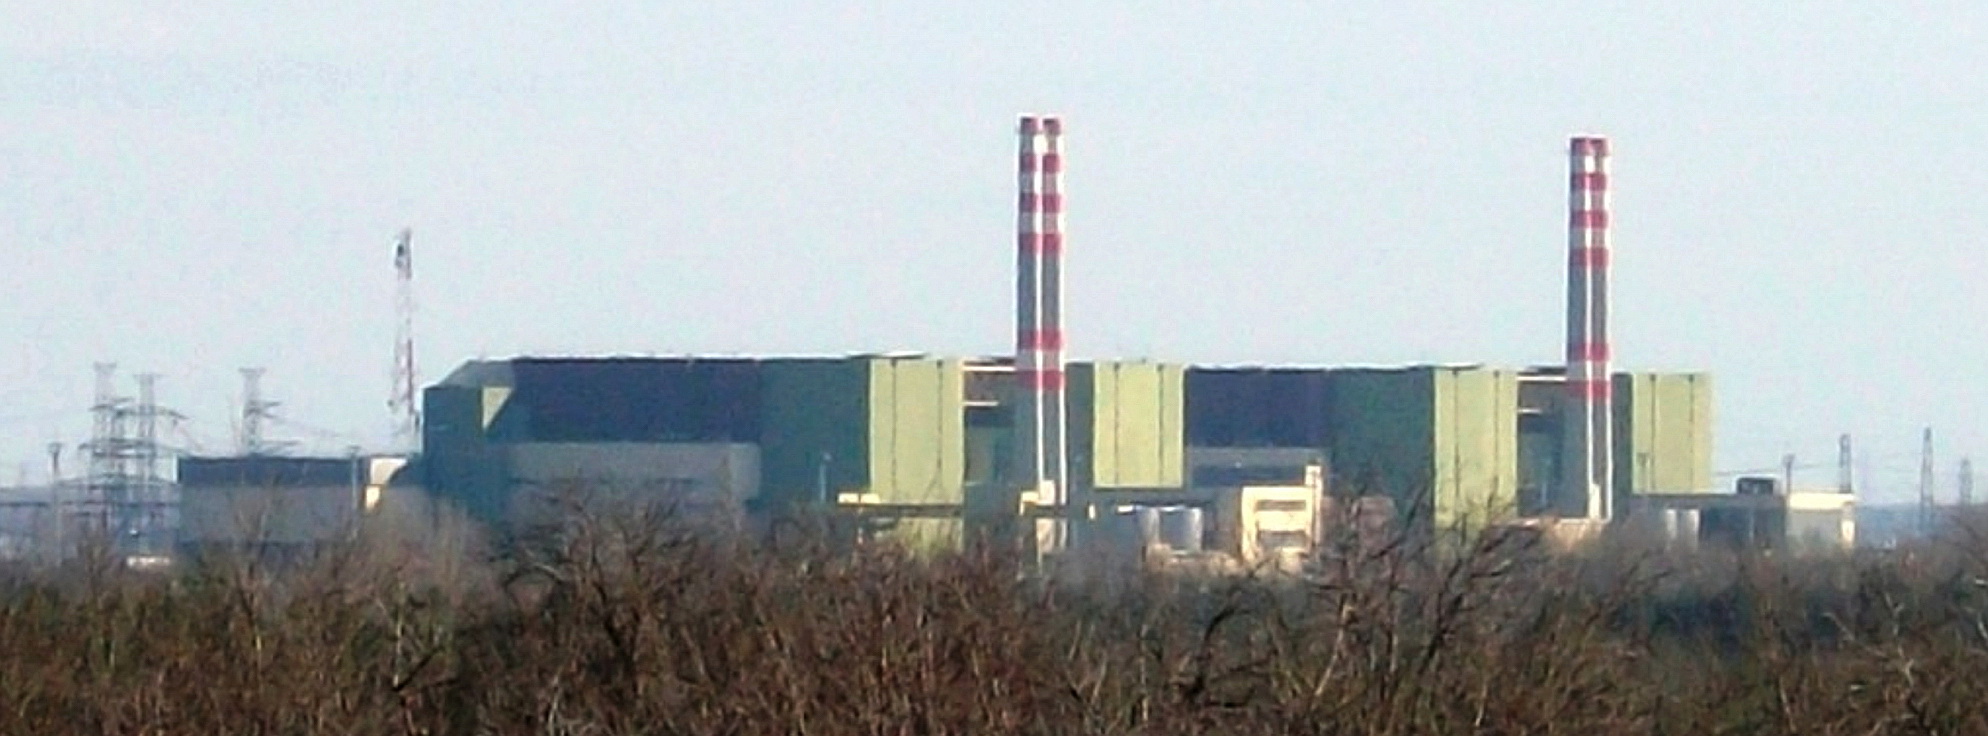 Атомная электростанция «Пакш», Венгрия